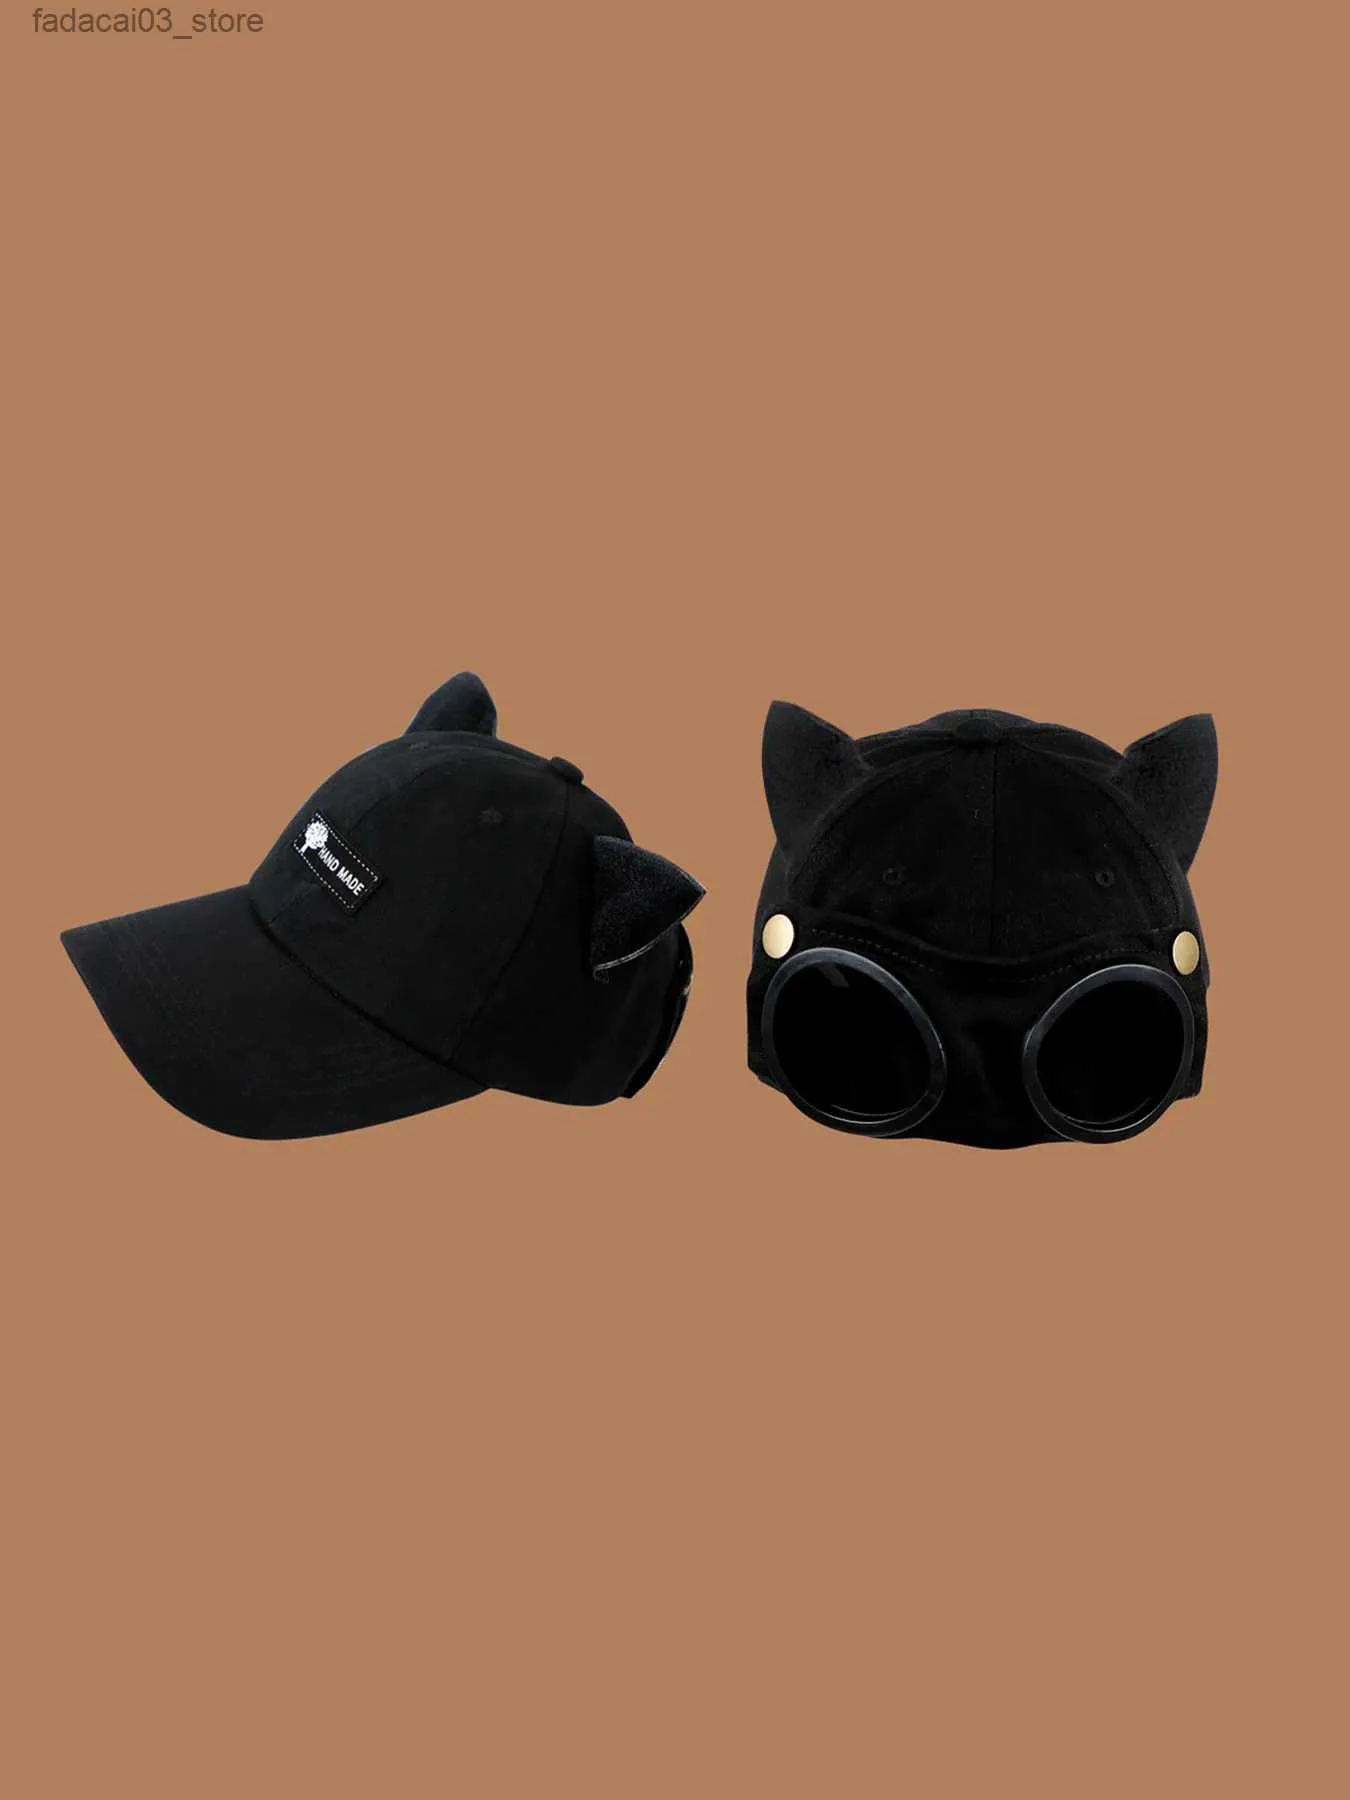 ボールキャップ秋と冬のユニセックスソリッドカラーサングラス猫の耳の野球キャップ楽しい帽子カップルのための両面摩耗ダック舌Q240116